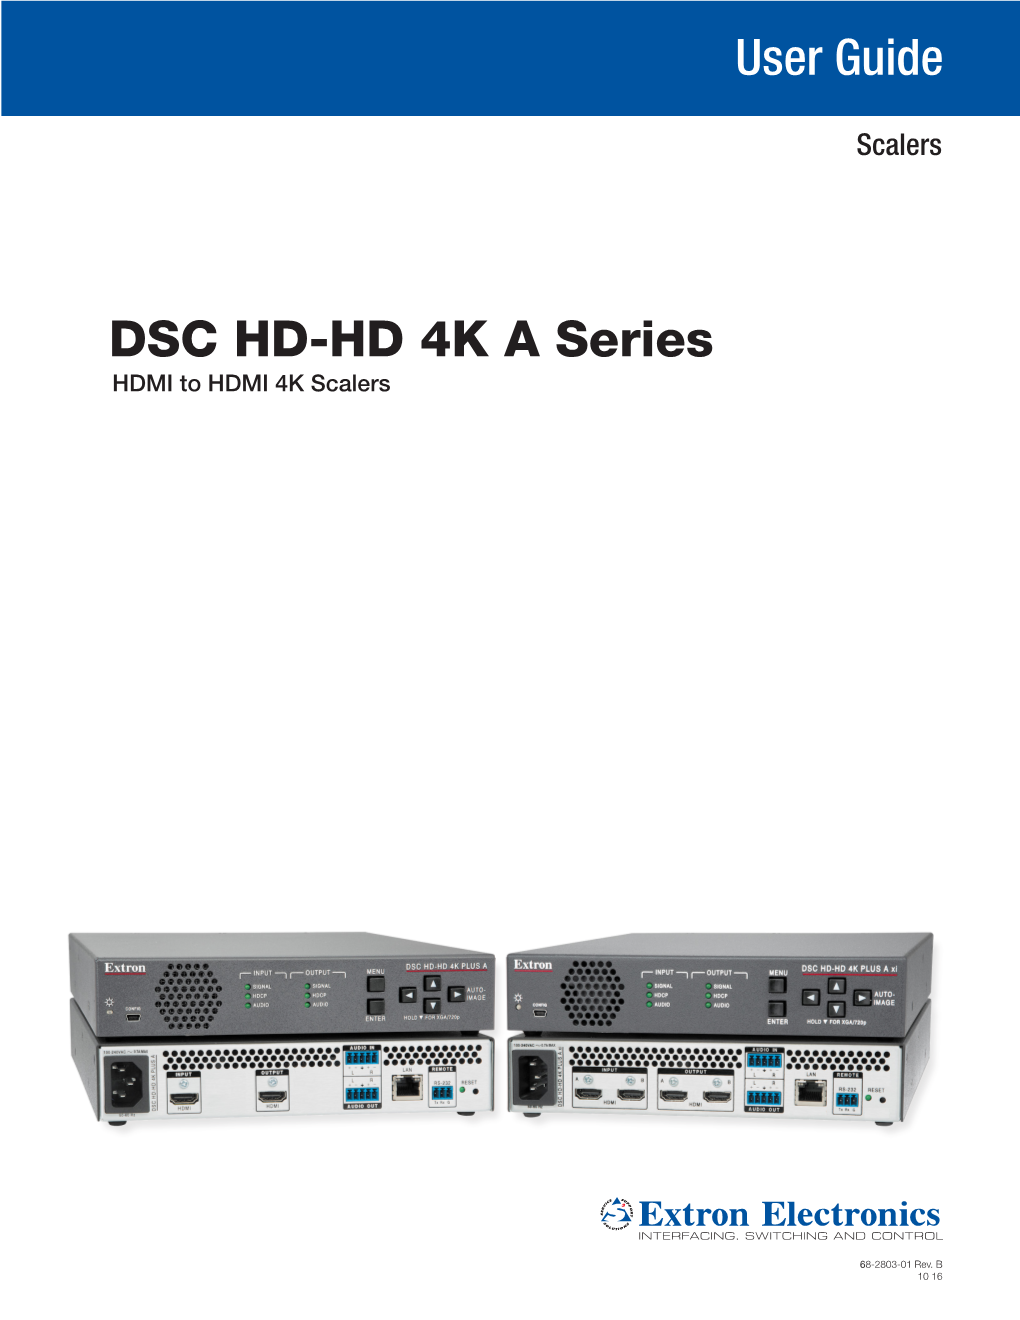 DSC HD-HD 4K a Series User Guide, Rev B